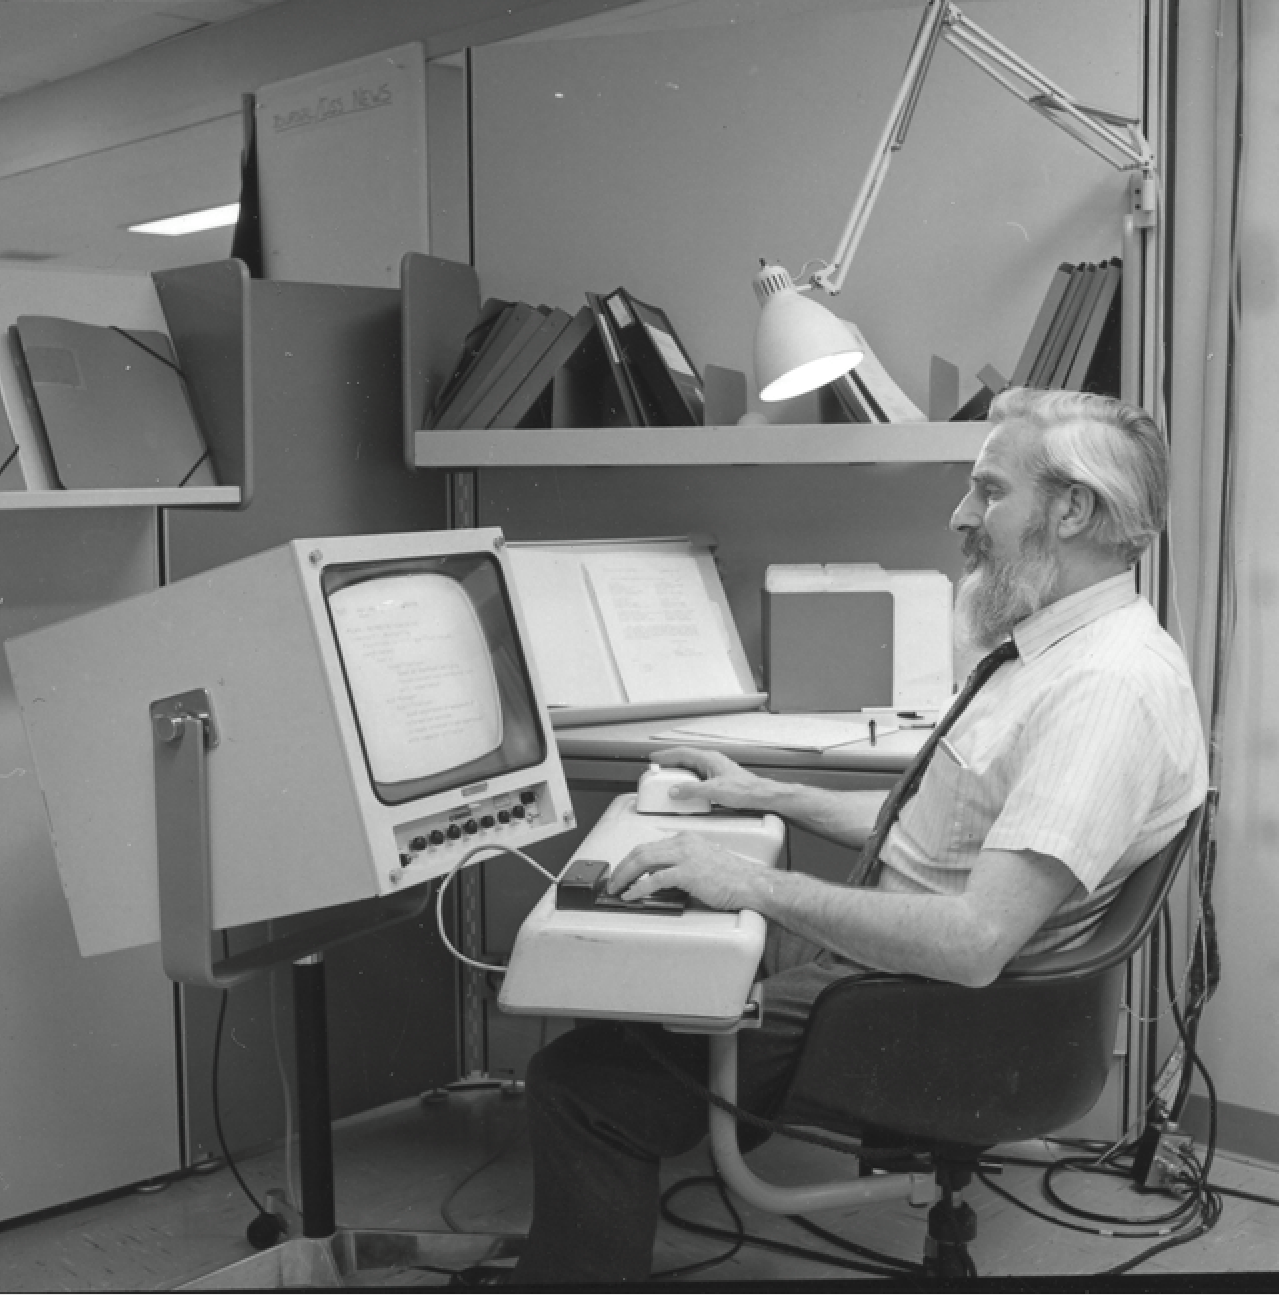 <p>Mõtles välja arvutihiire (1963). Prototüüp kontoritarveteks (setup) - keypad, keyboard, mouse etc.</p>